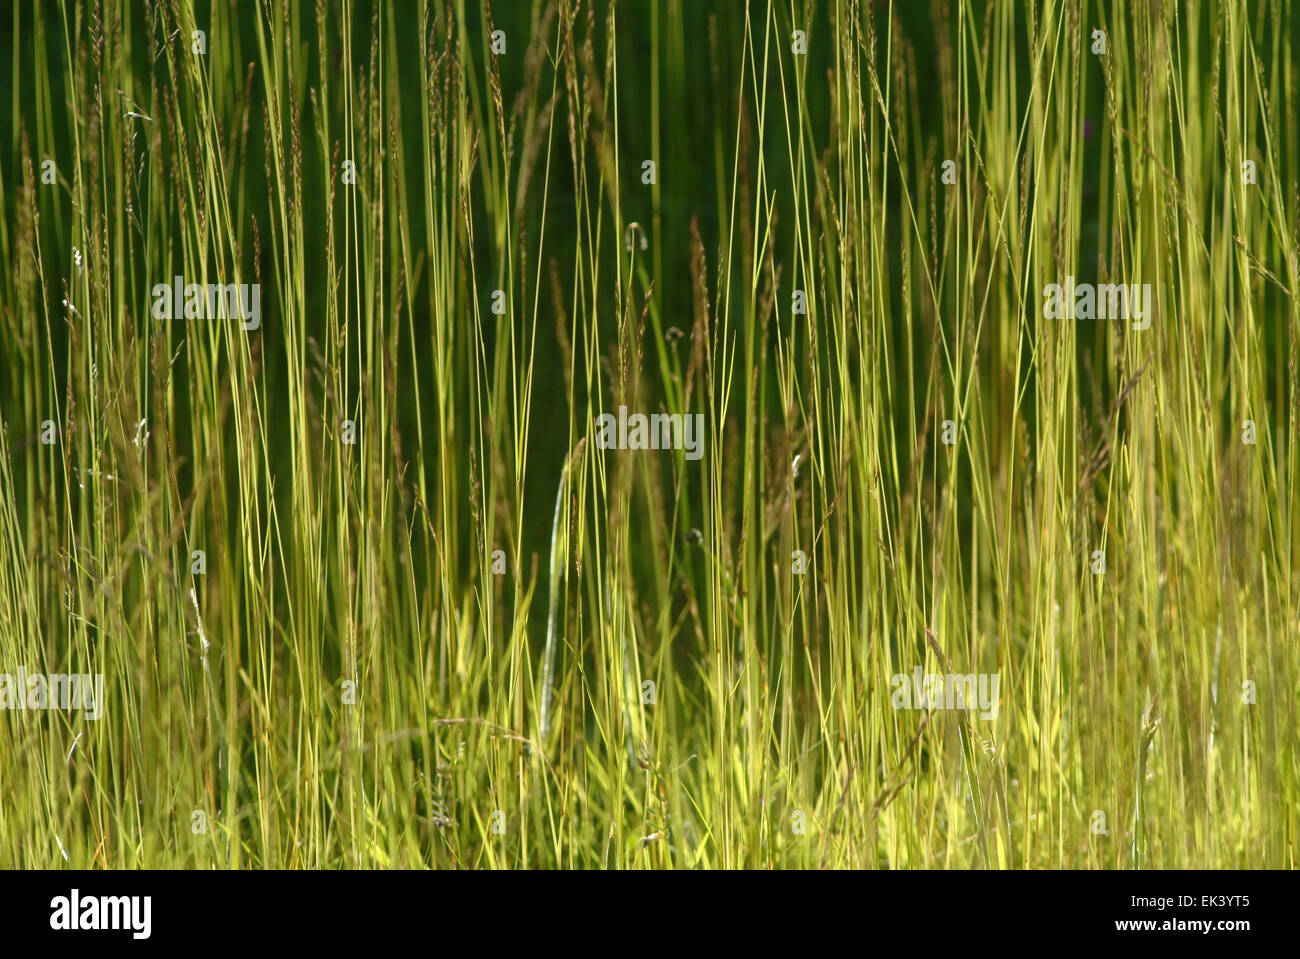 Green Gras in backlight monotone Stock Photo